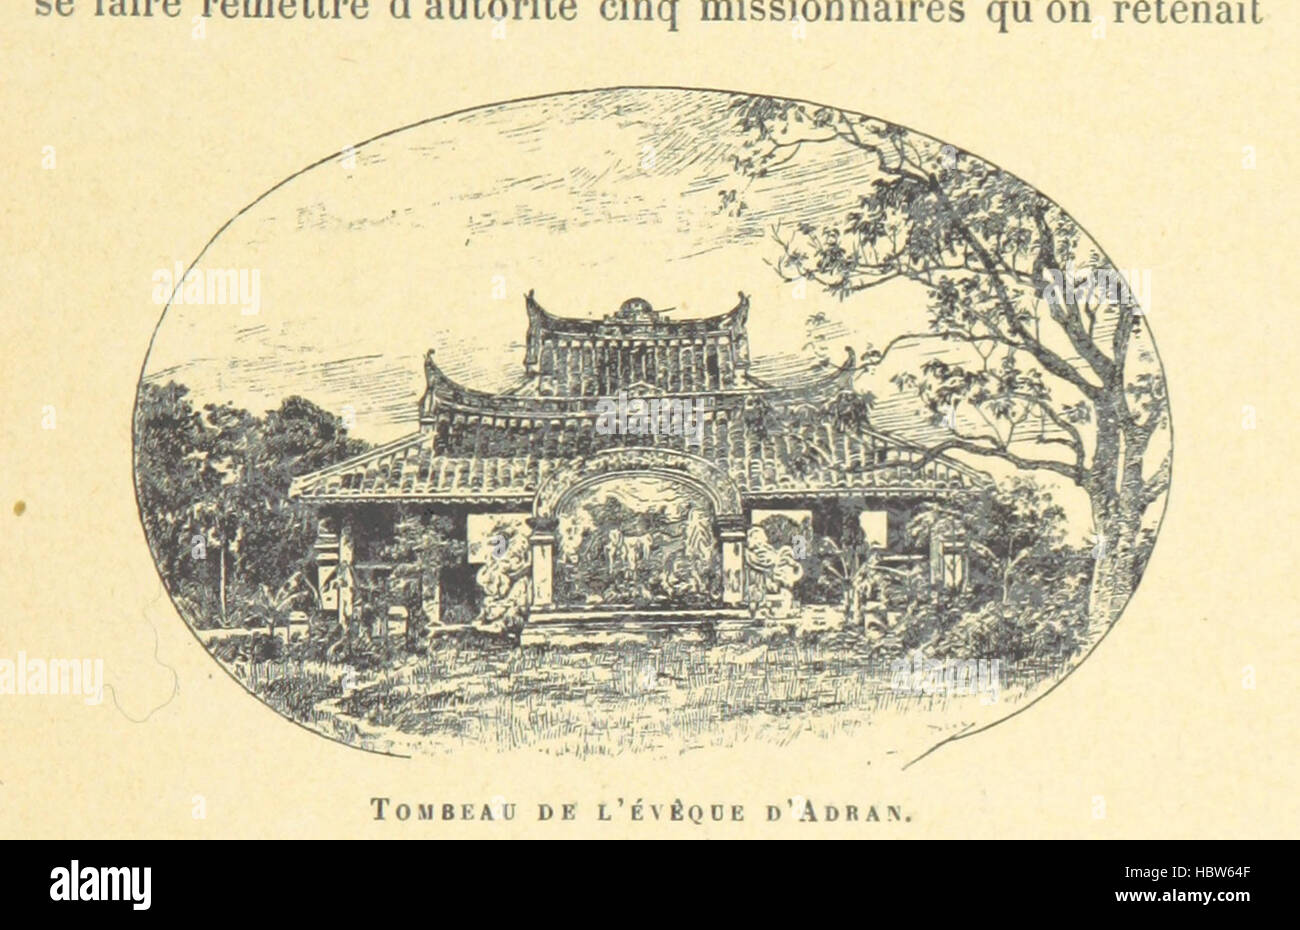 Bild entnommen Seite 69 von "La France Aux Kolonien" Bild entnommen Seite 69 von "La France Aux Kolonien" Stockfoto